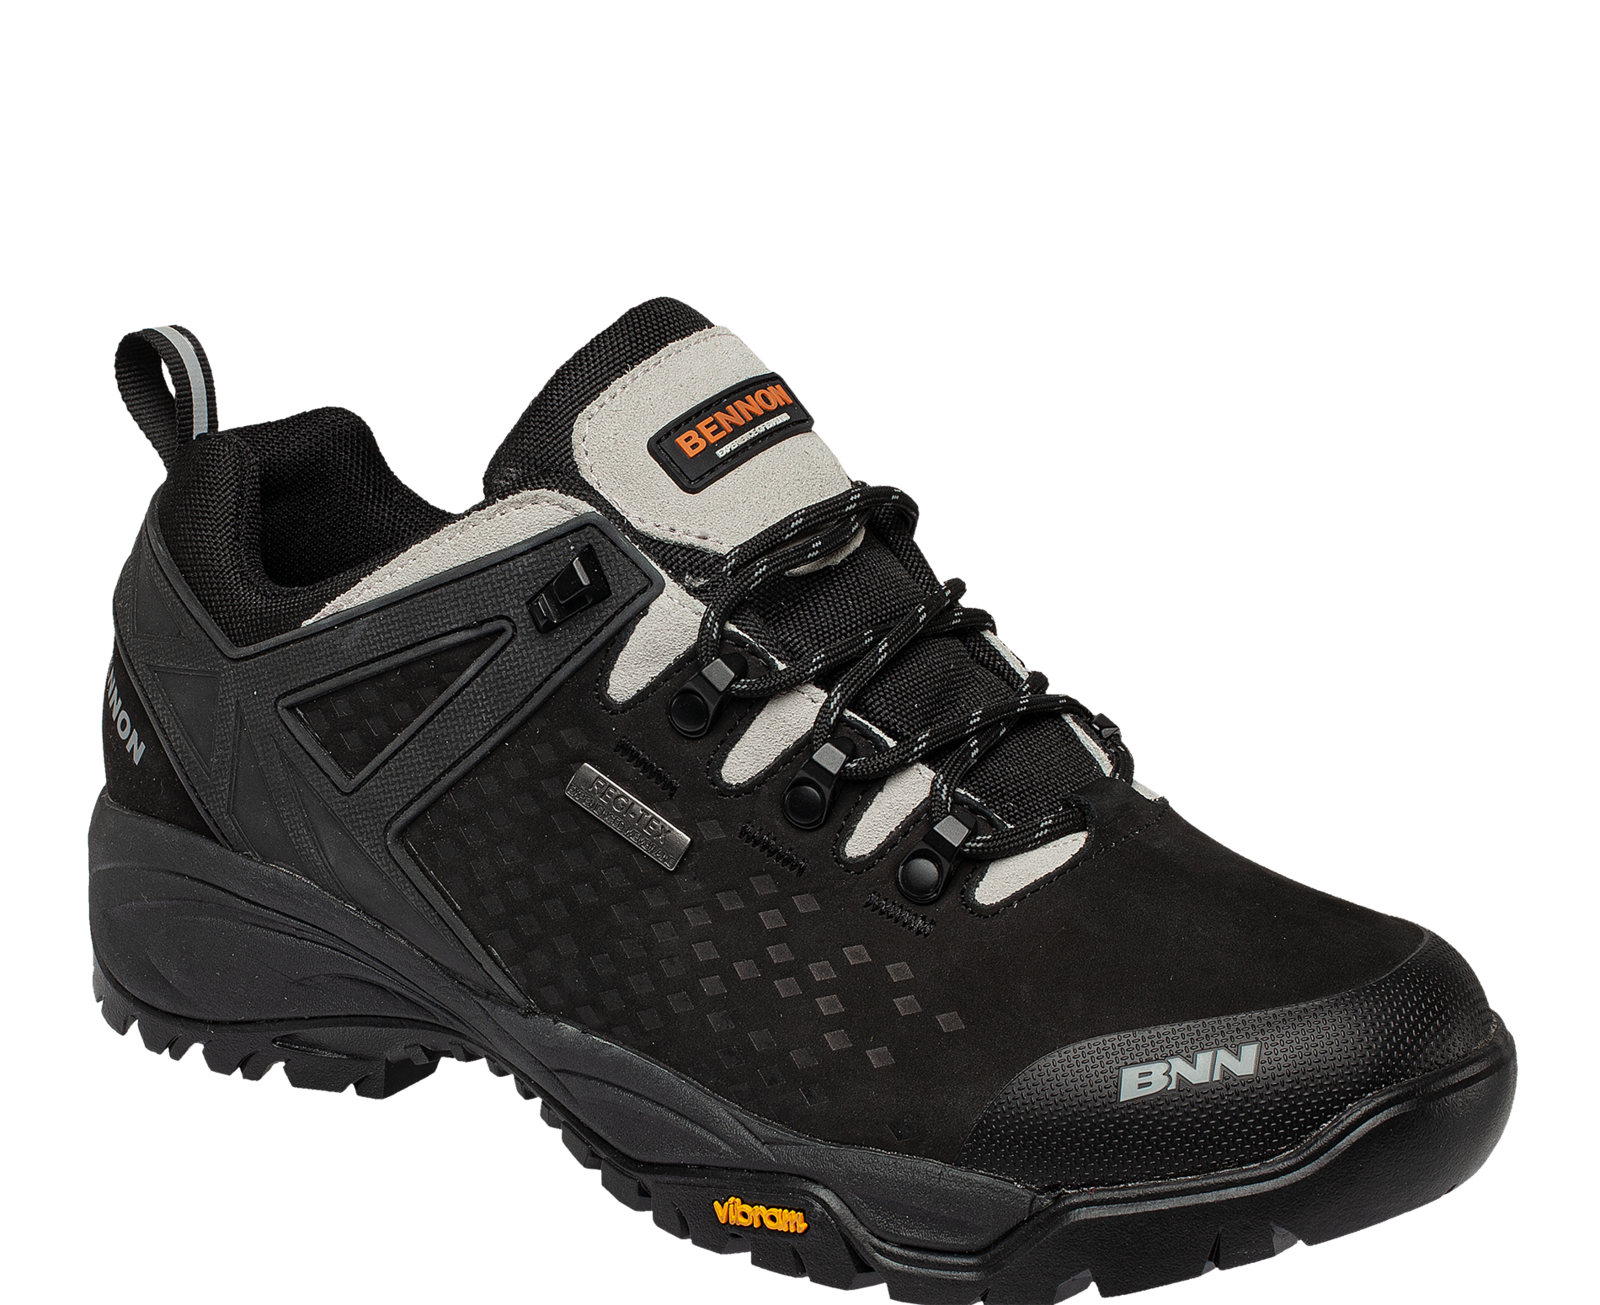 Outdoorová obuv Bennon Recado XTR O2 s membránou - veľkosť: 44, farba: čierna